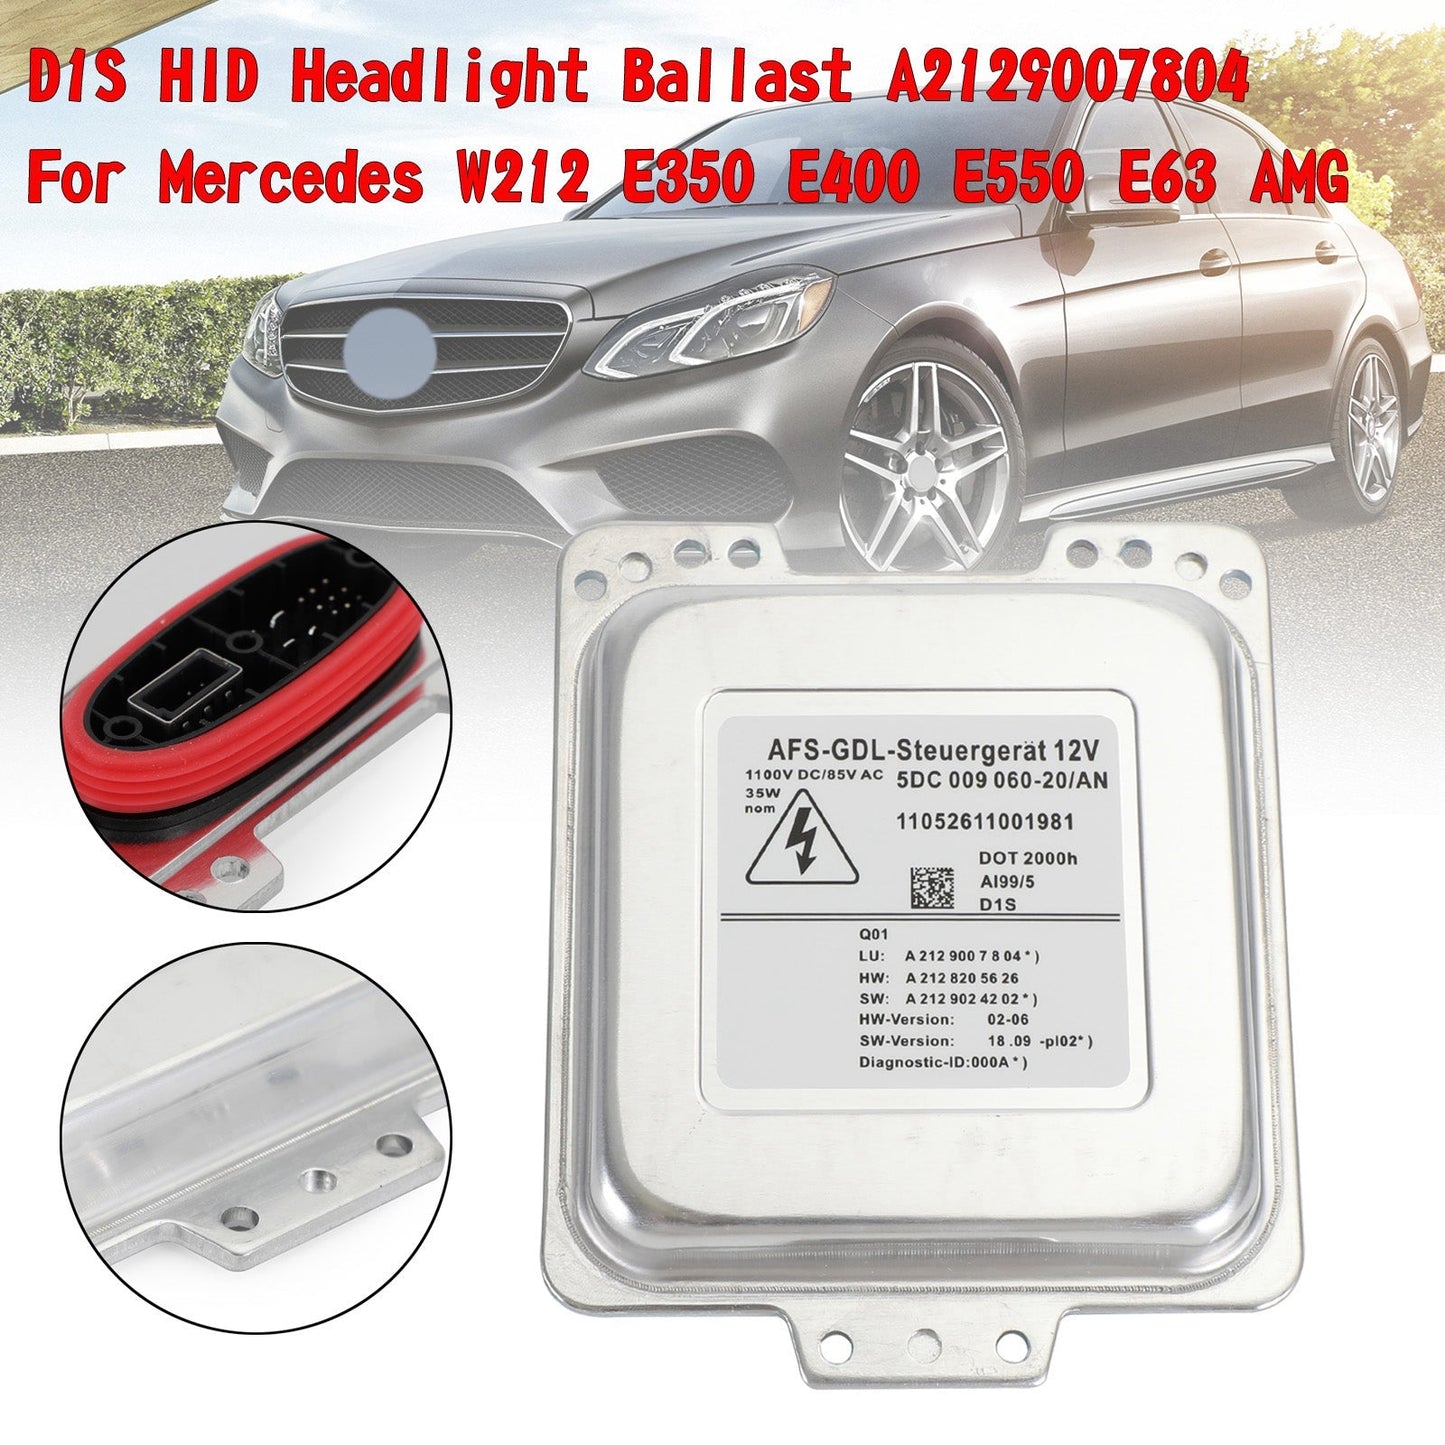 2009 -2013 Mercedes Benz E Class W212 Saloon D1S HID Headlight Ballast A2129007804 A2128205626